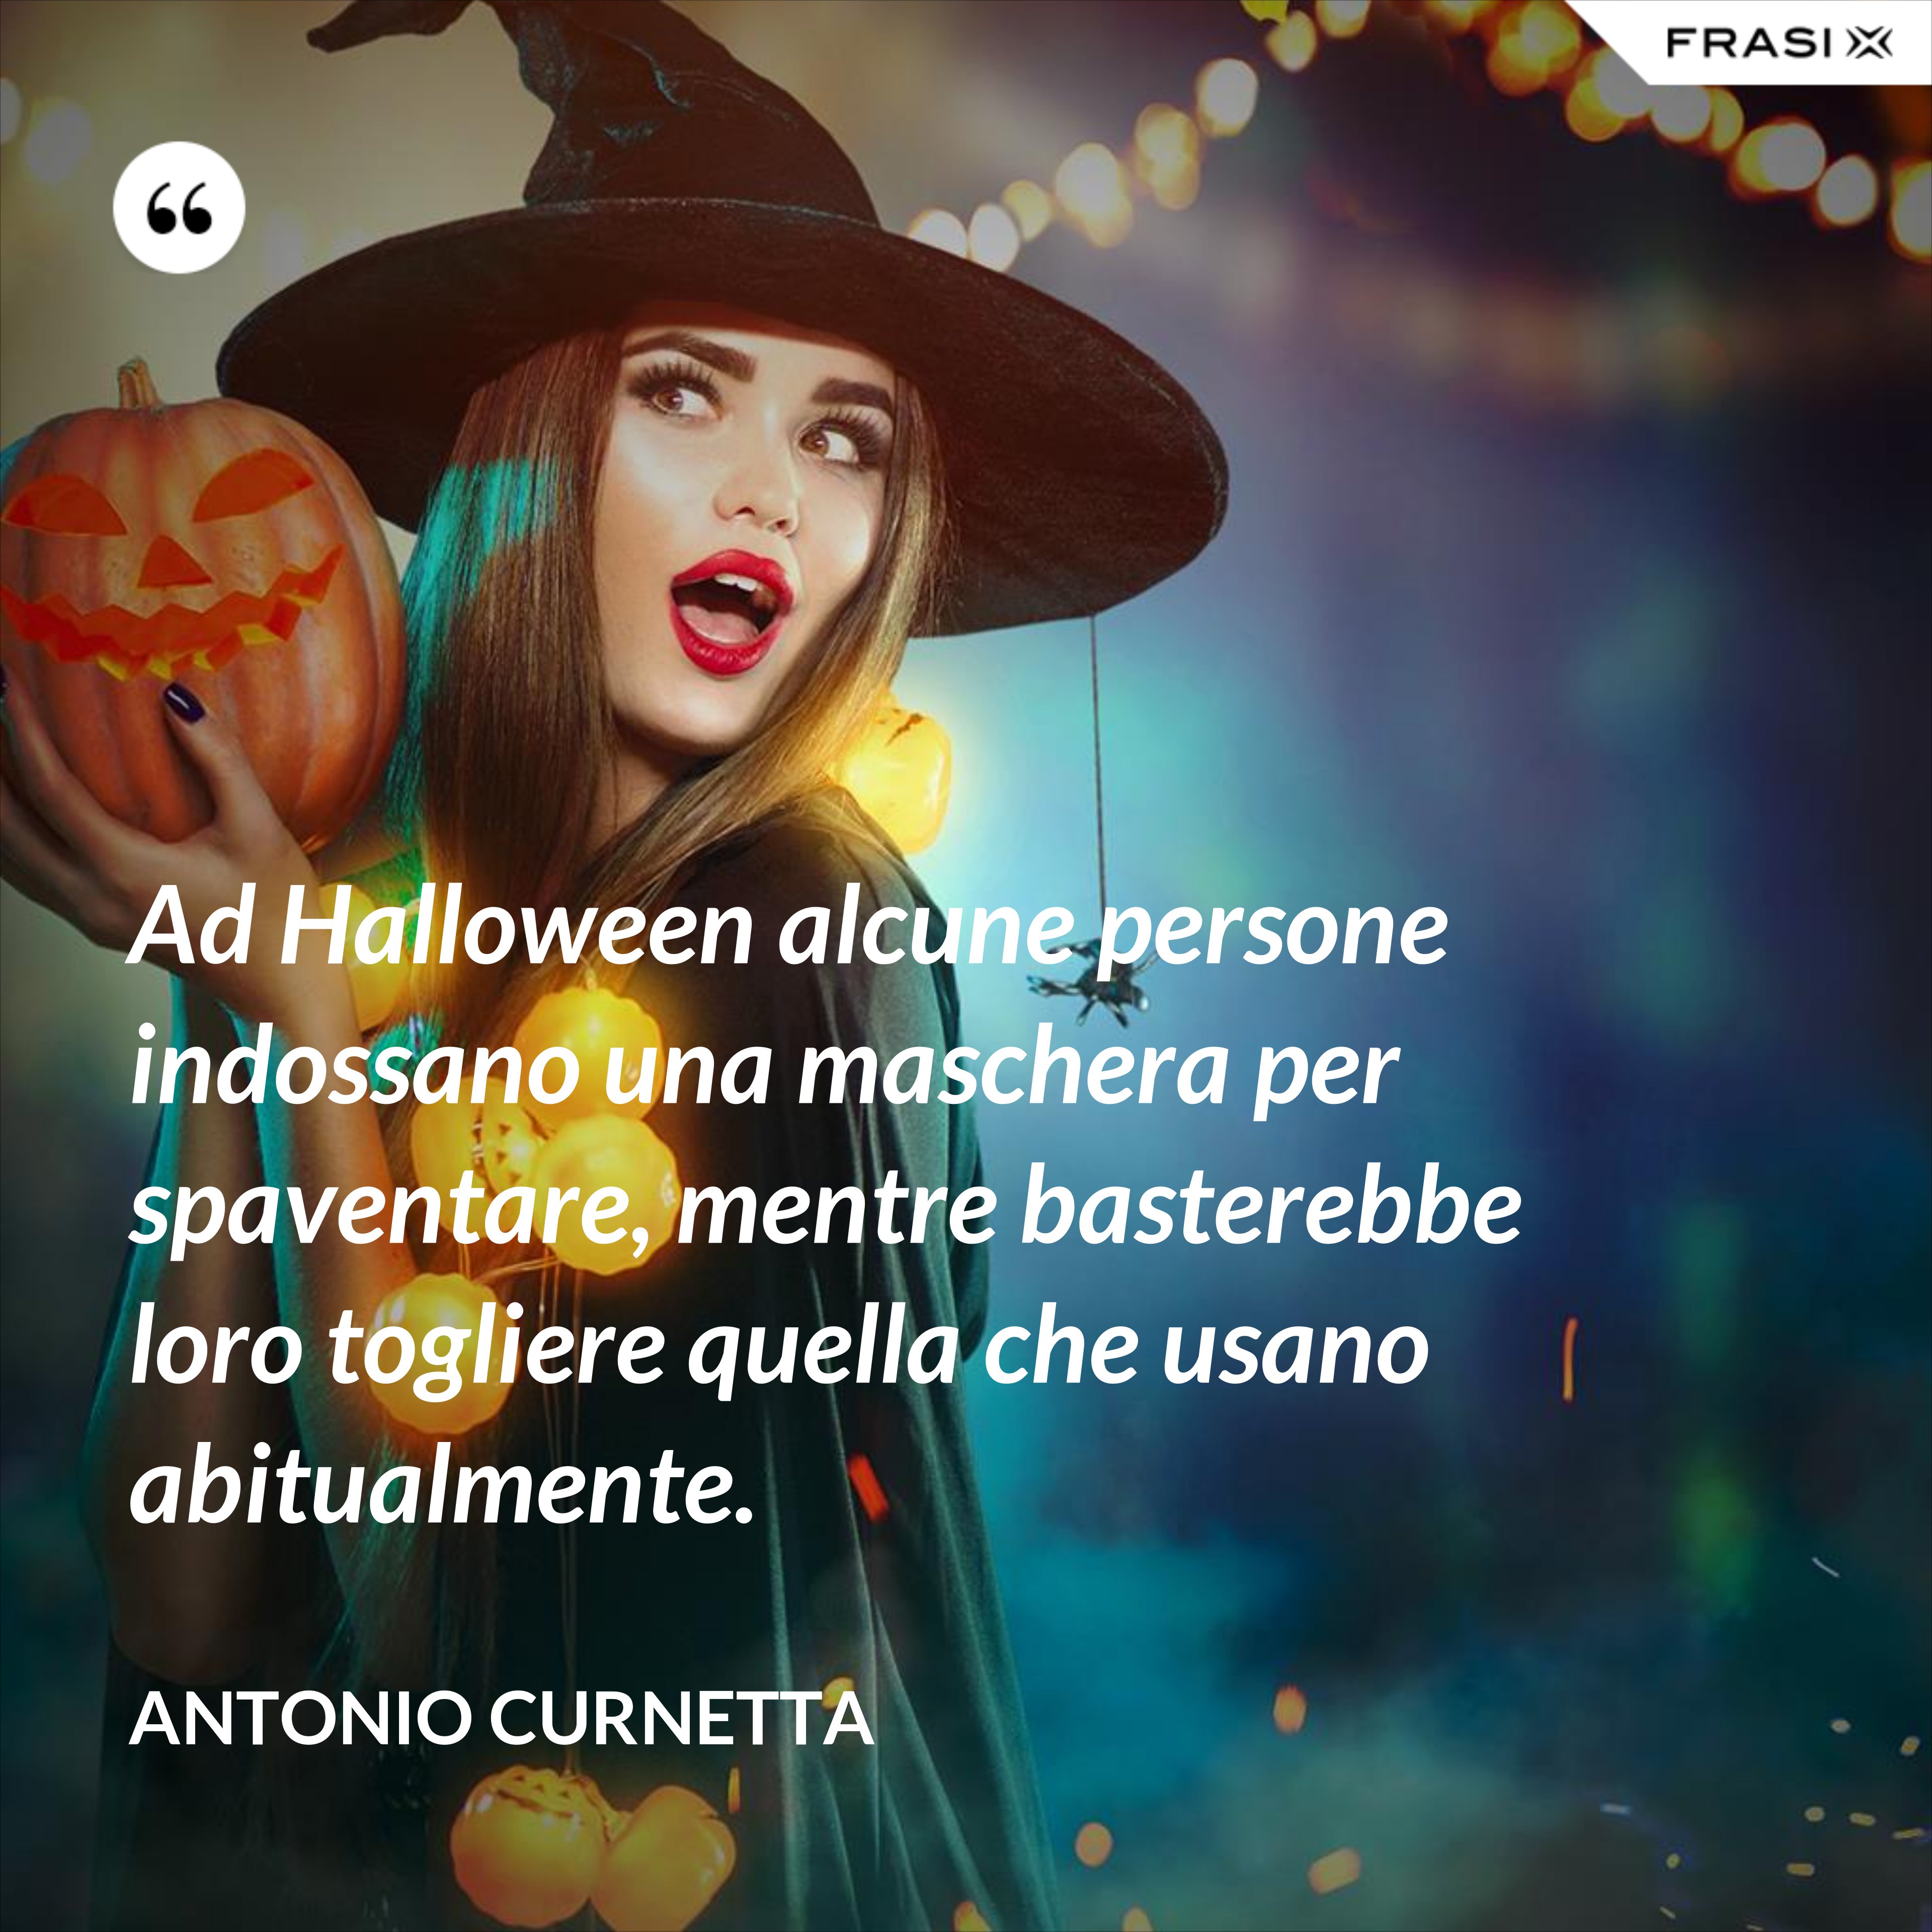 Ad Halloween alcune persone indossano una maschera per spaventare, mentre basterebbe loro togliere quella che usano abitualmente. - Antonio Curnetta